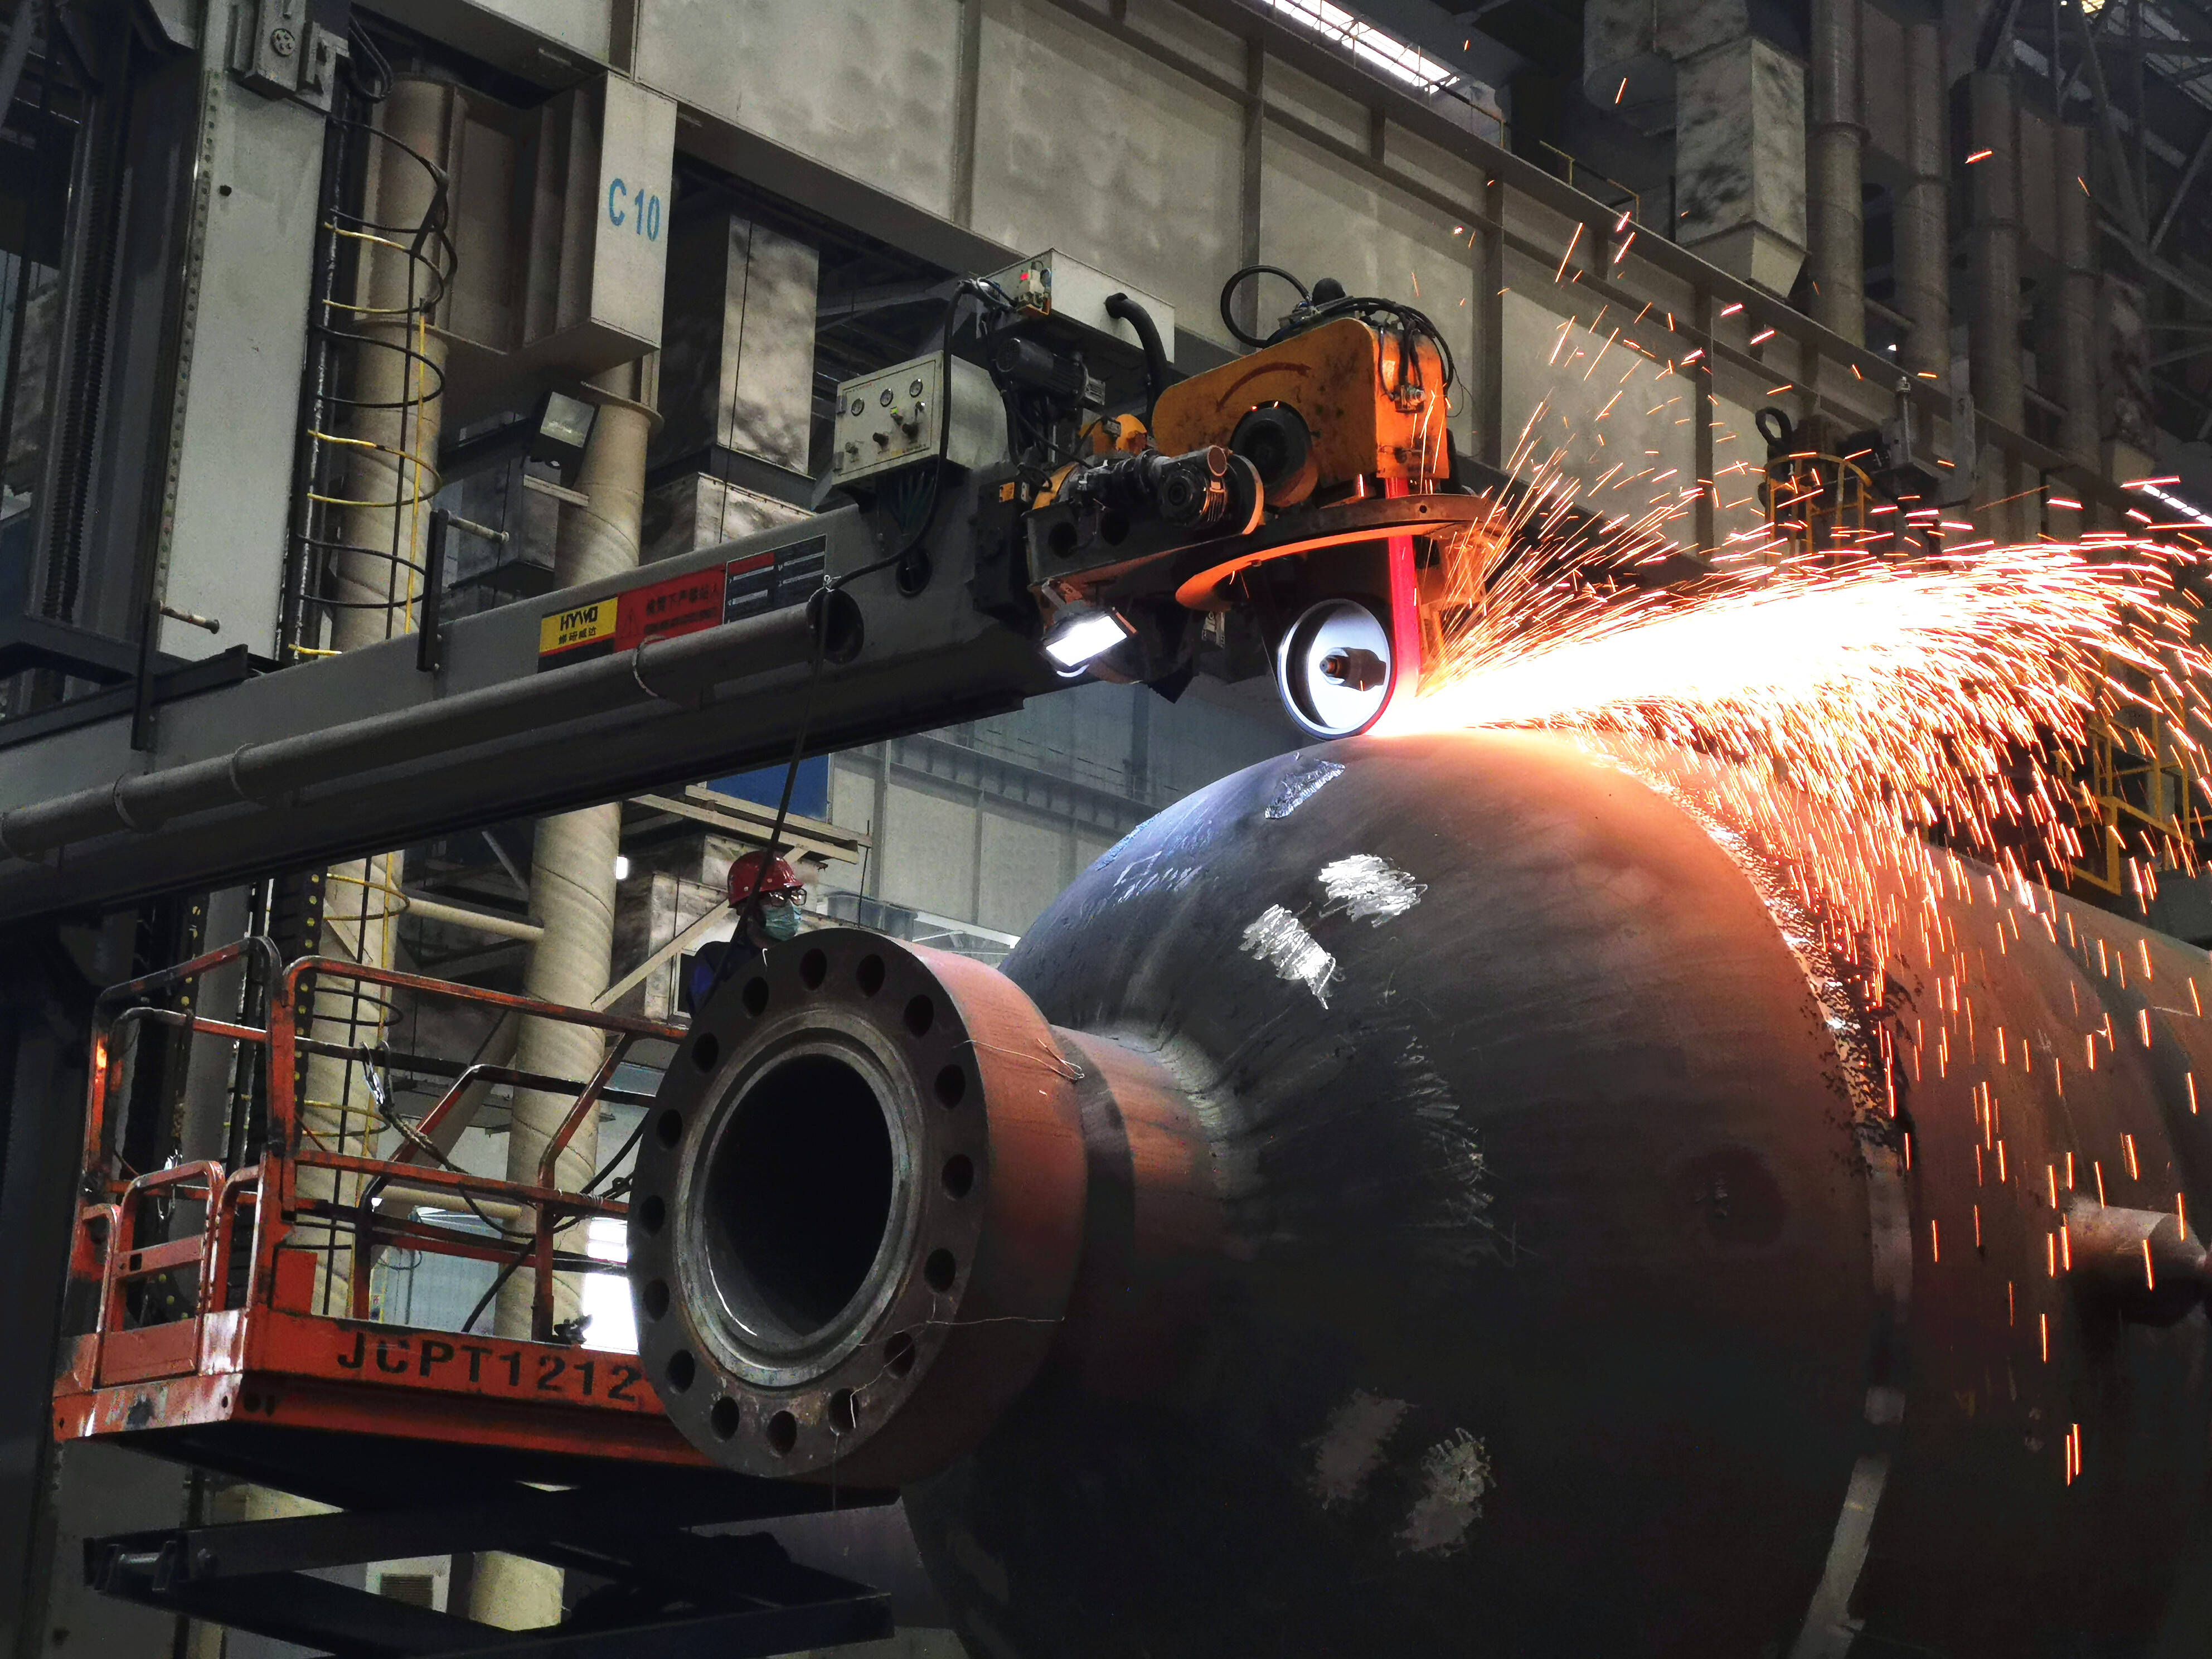 青岛兰石重型机械设备有限公司生产车间内正在加紧生产。